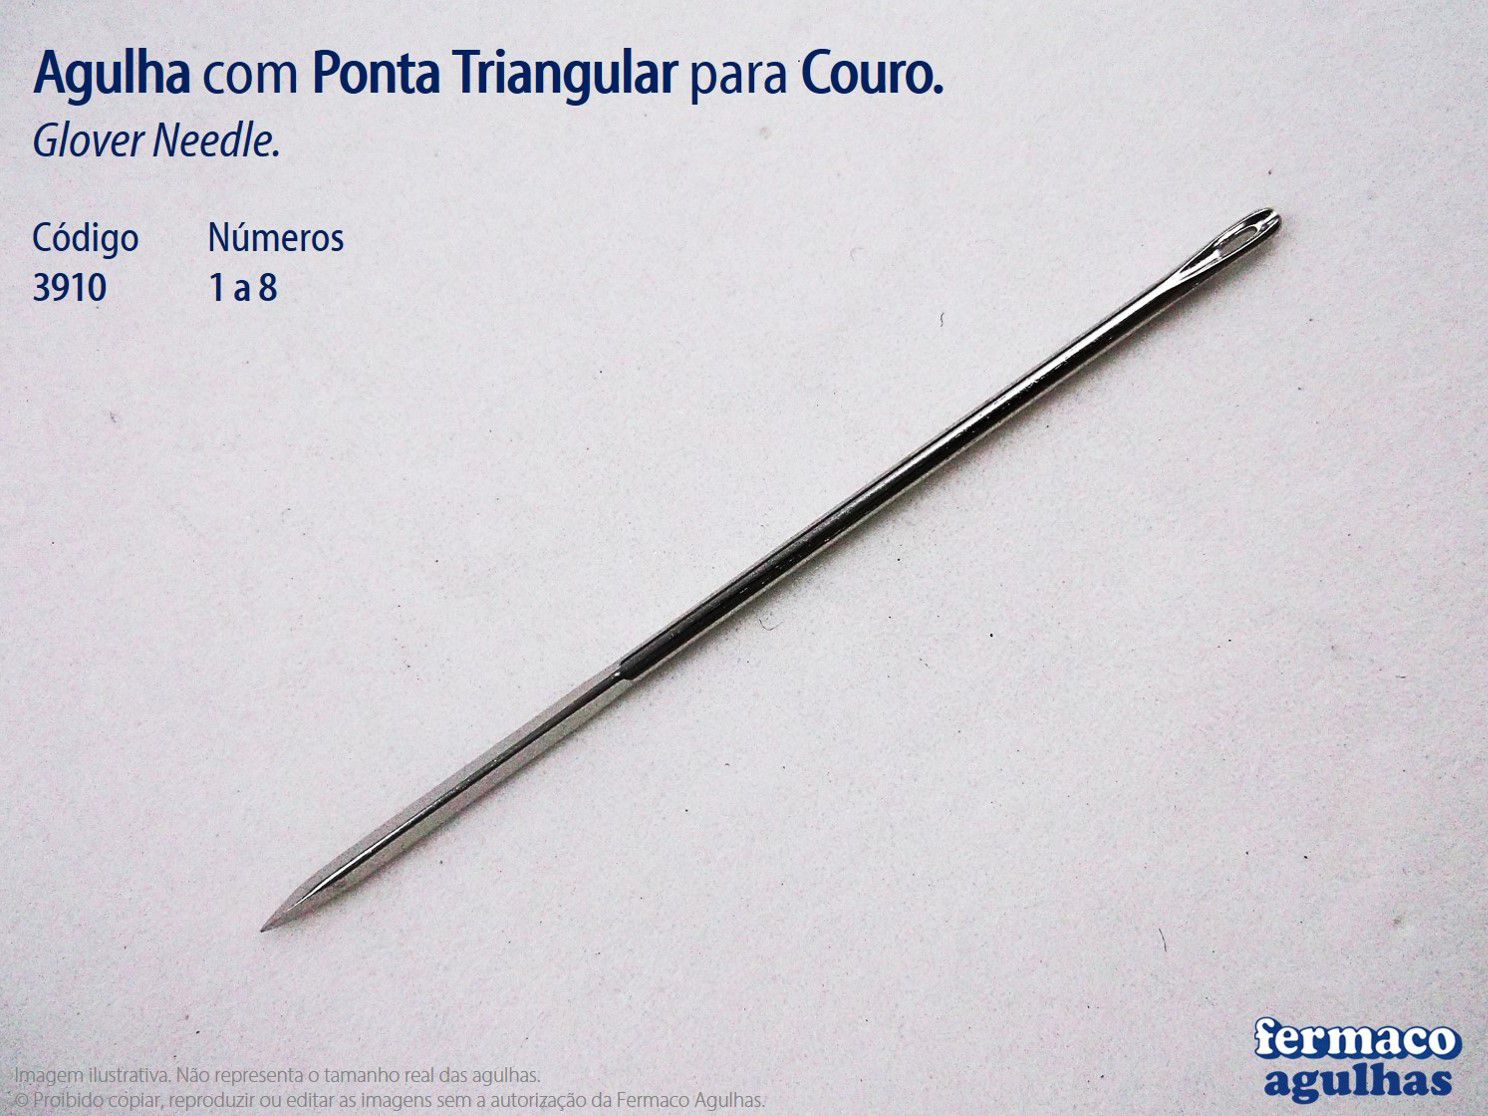 Agulha para Couro com Ponta Triangular número 6 (39,5mm x 0,76mm). Agulha Glover Needle 6.